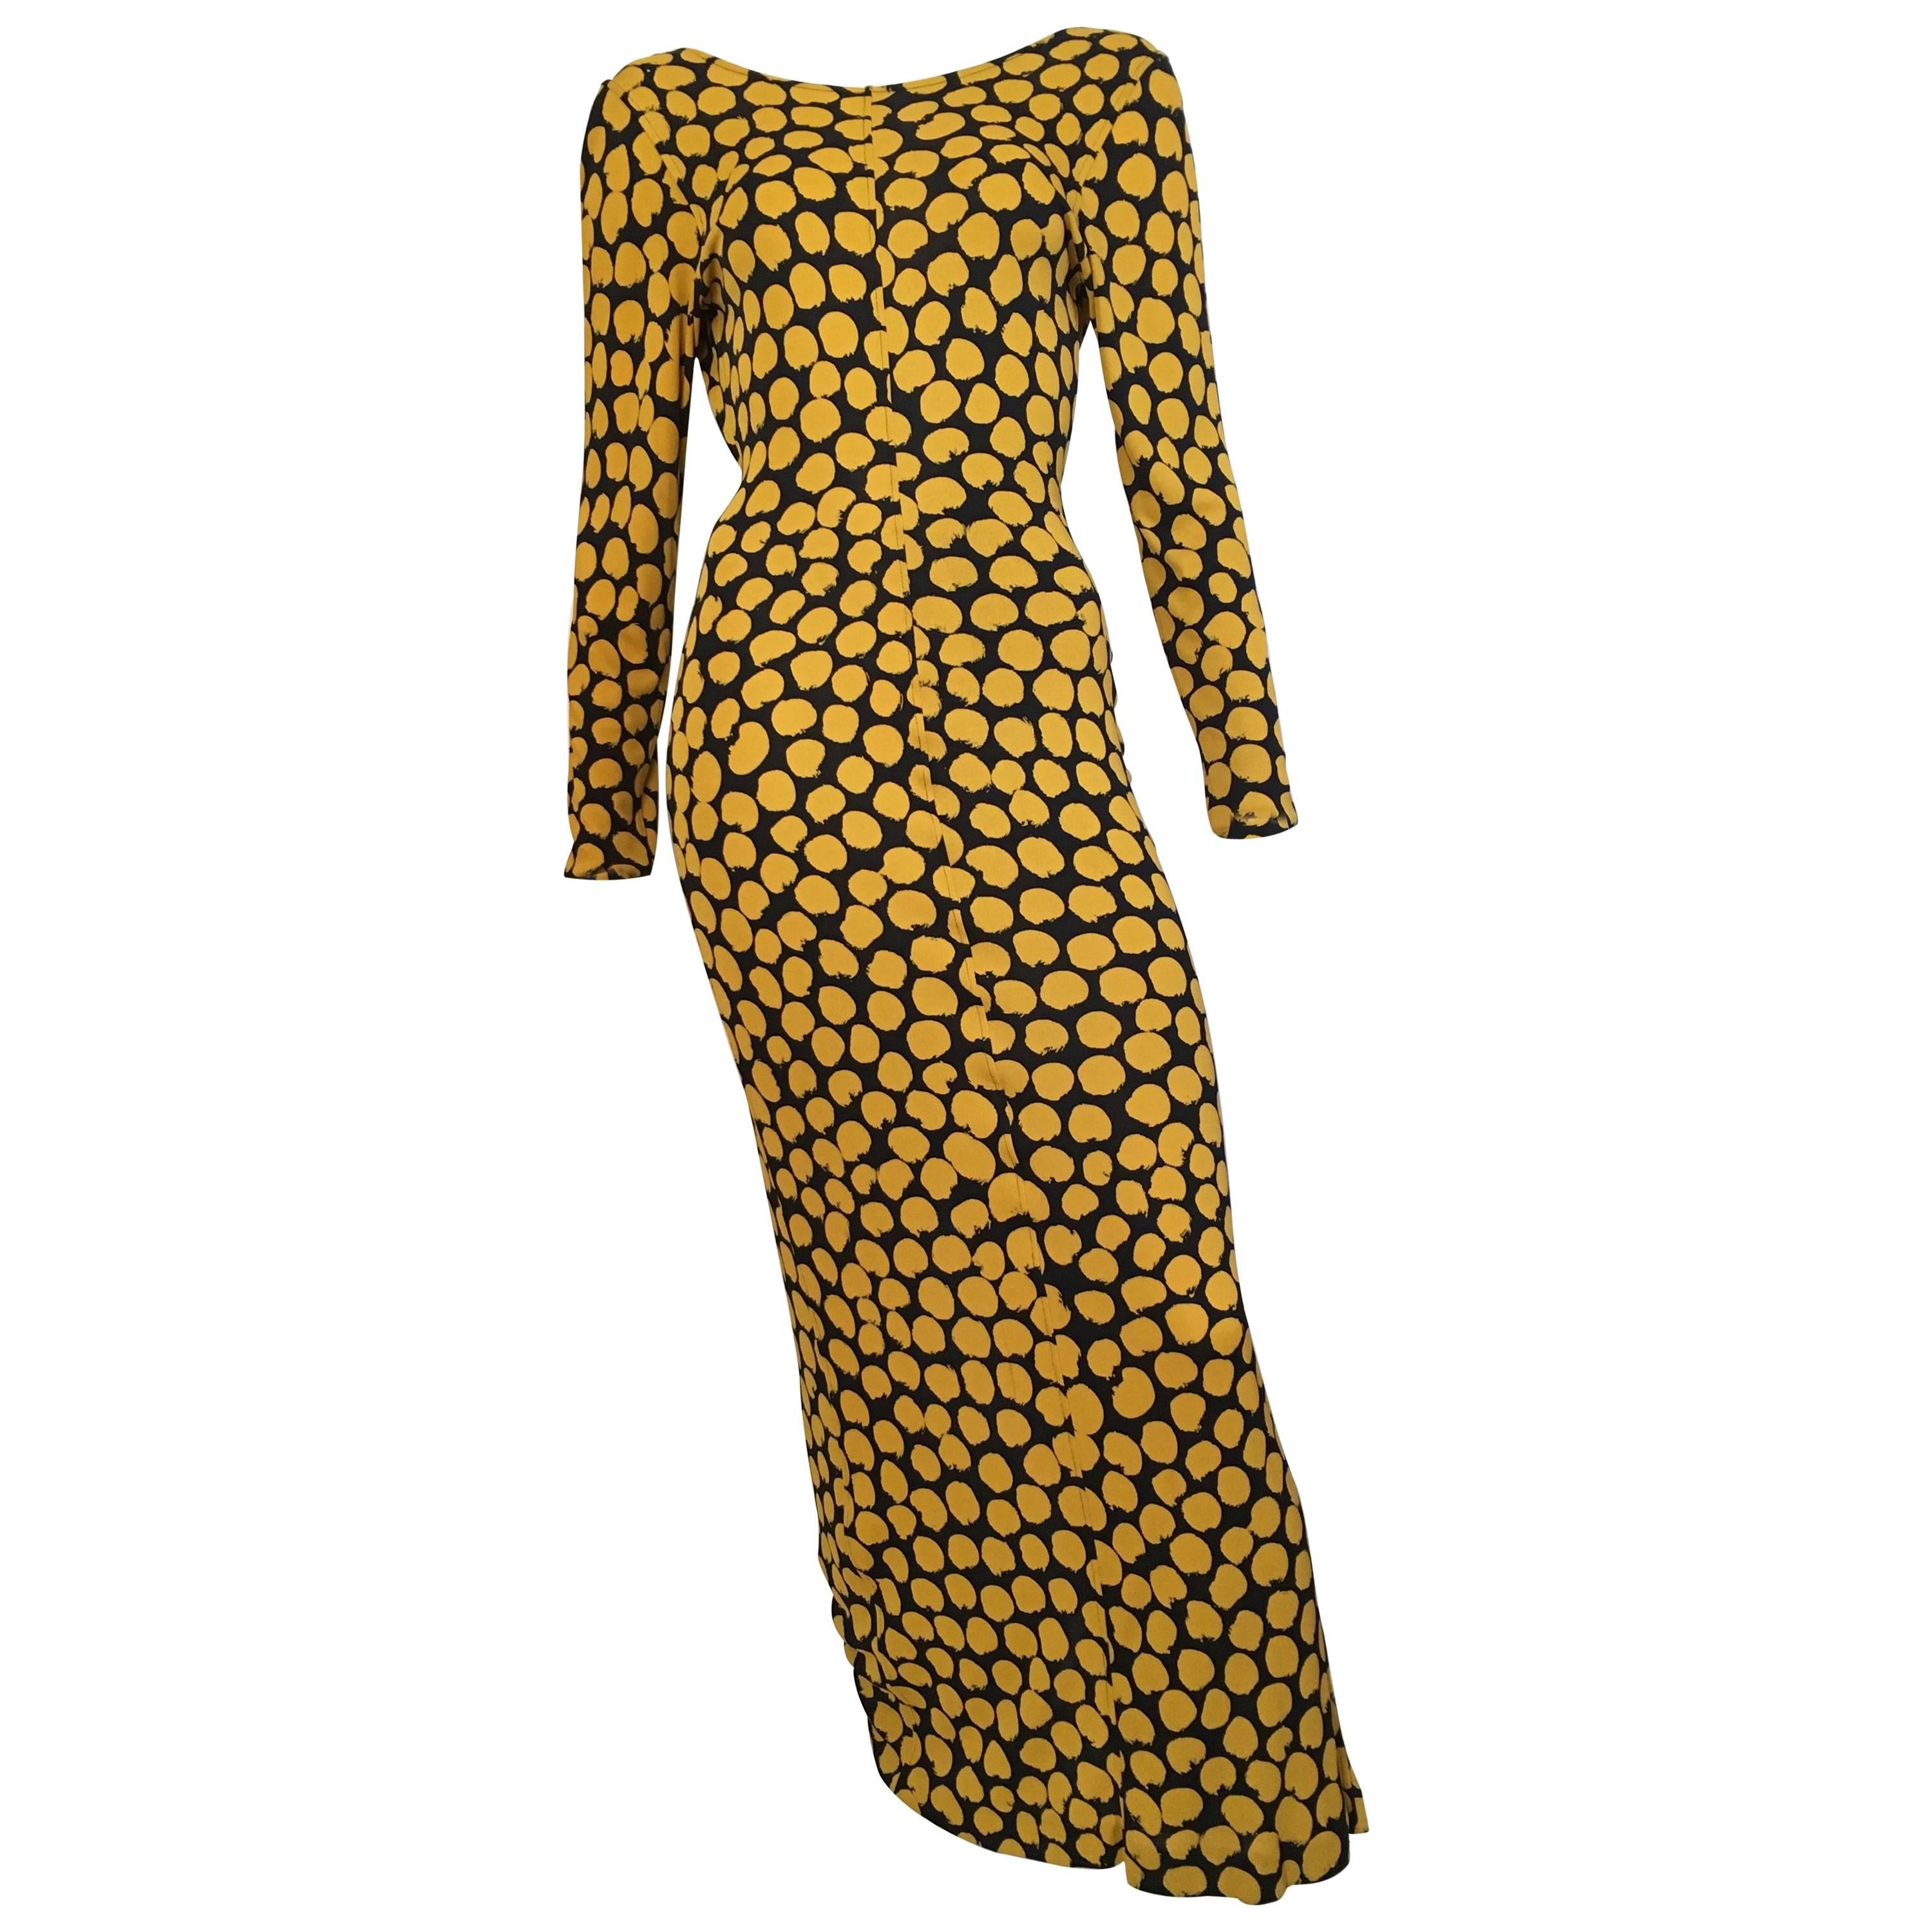 Missoni Yellow & Black Polka Dot Gown Size 4.